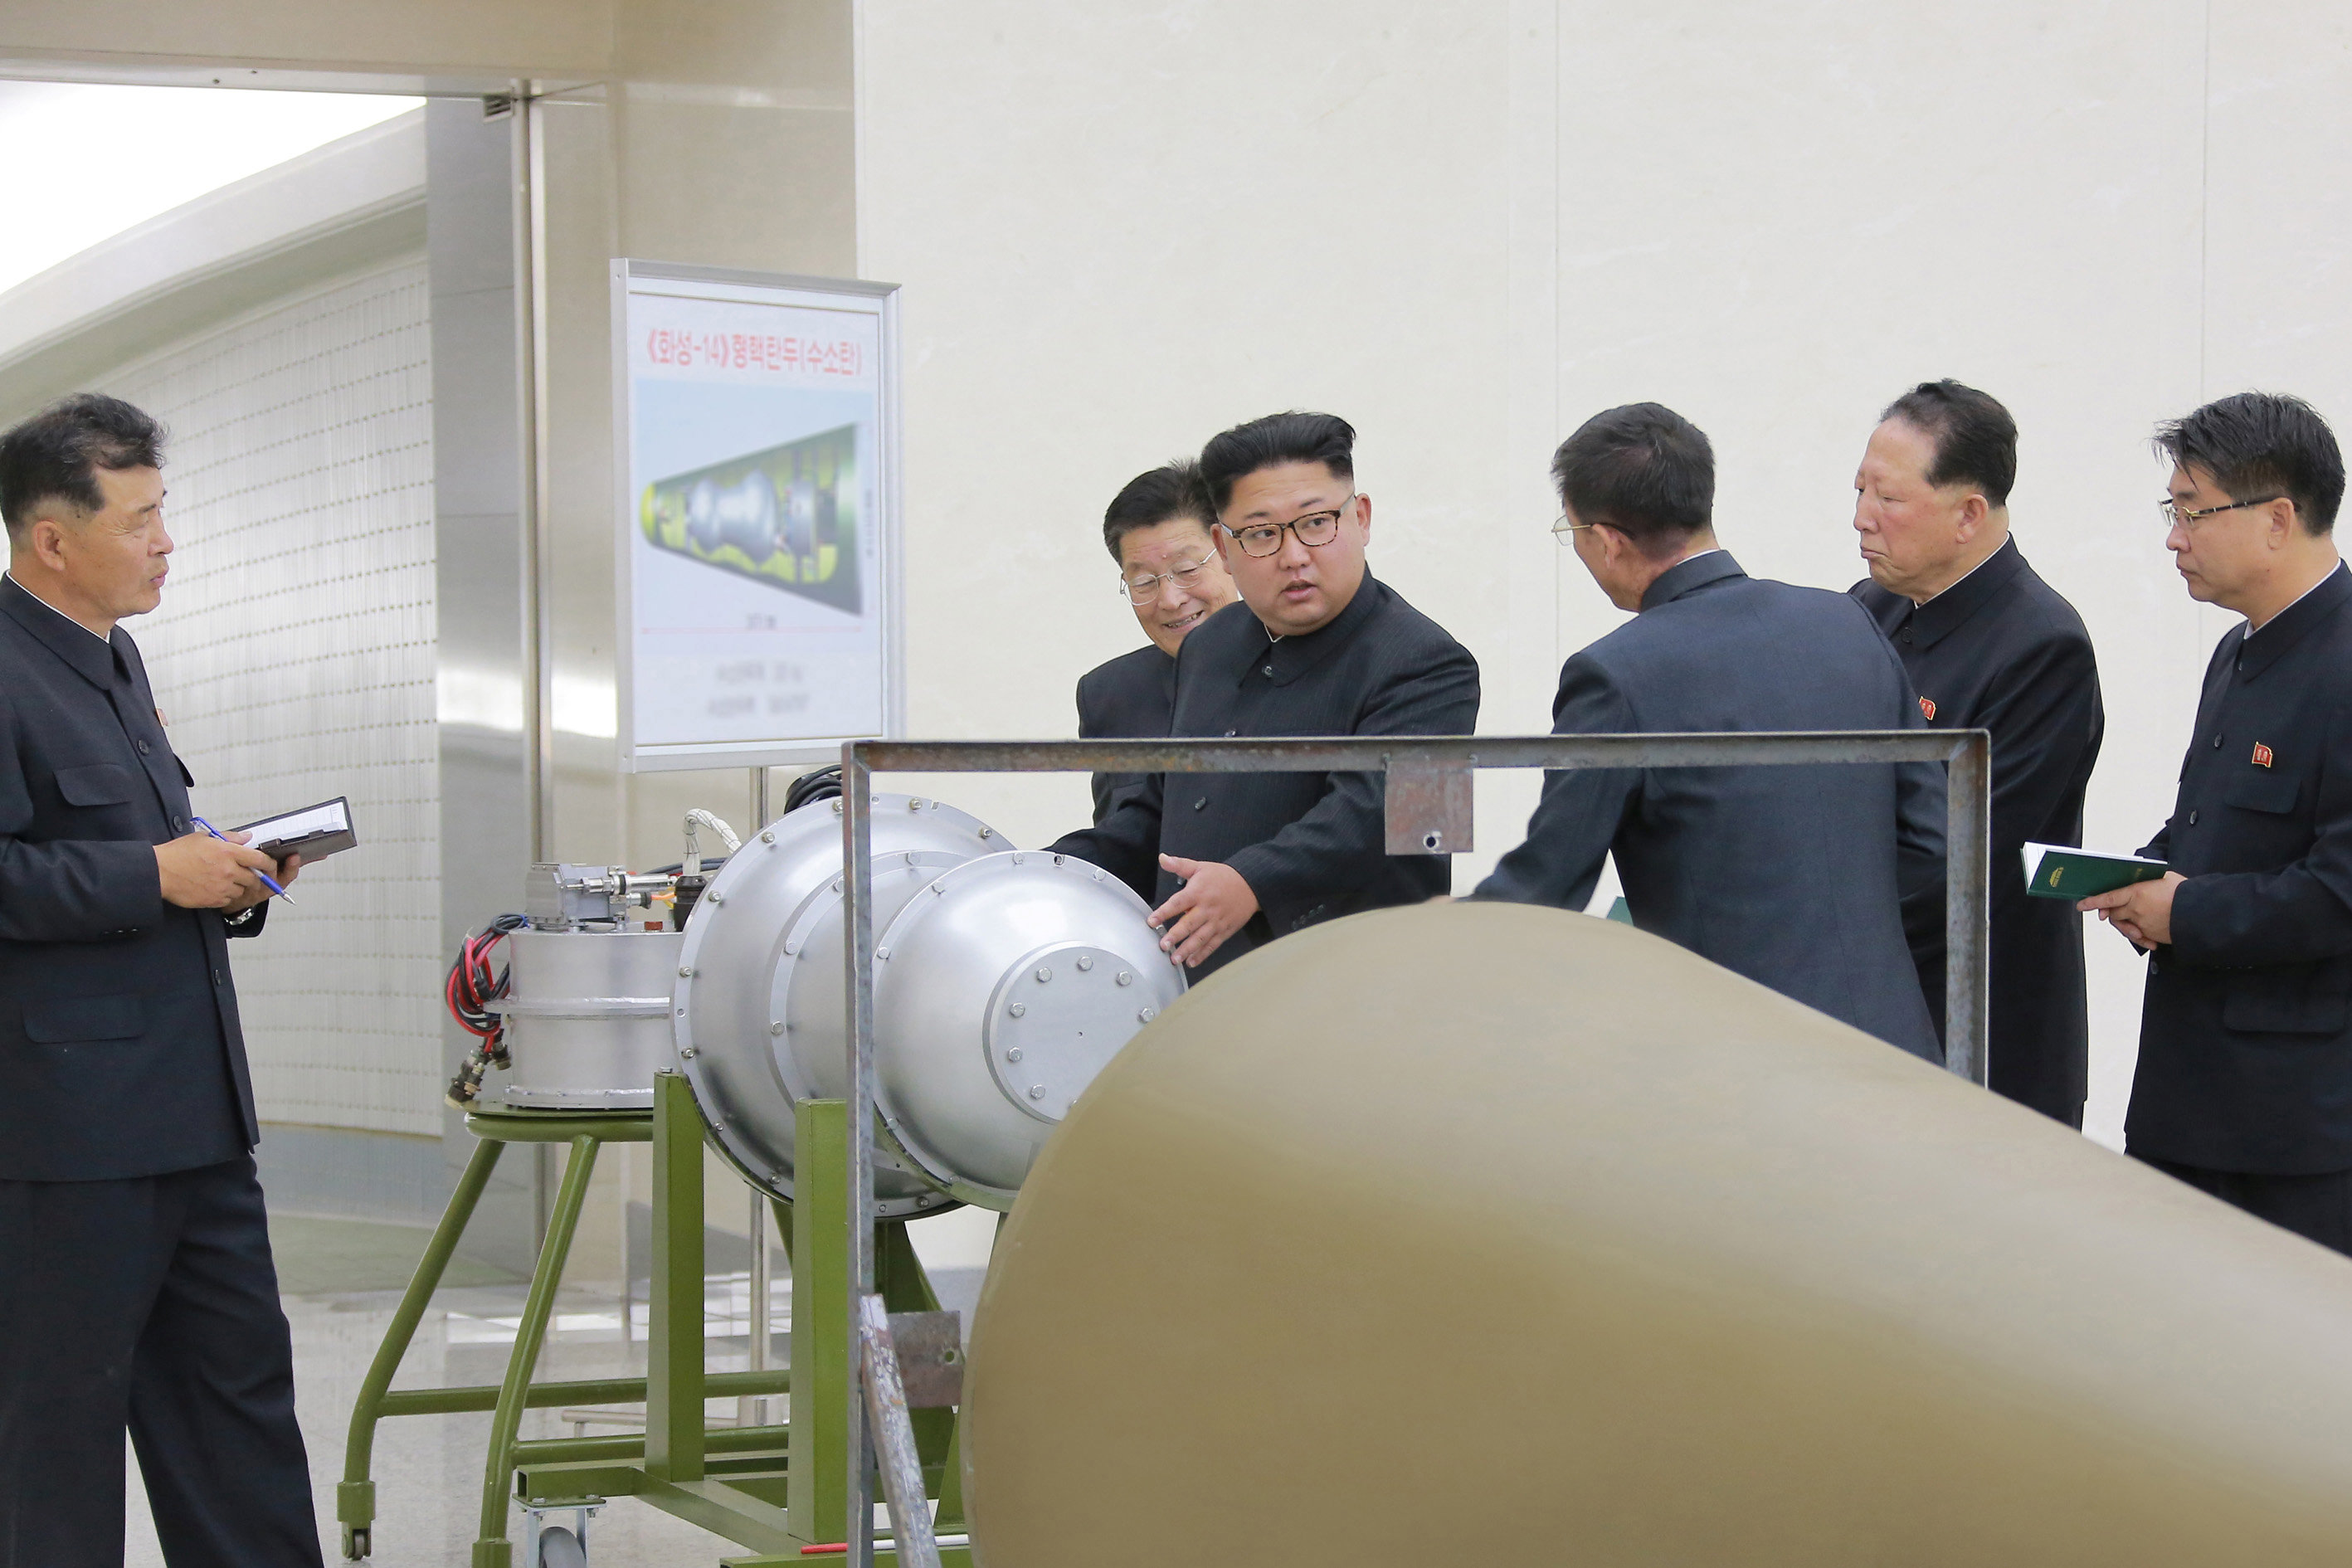 الزعيم الكوري يتفقد البرنامج النووي